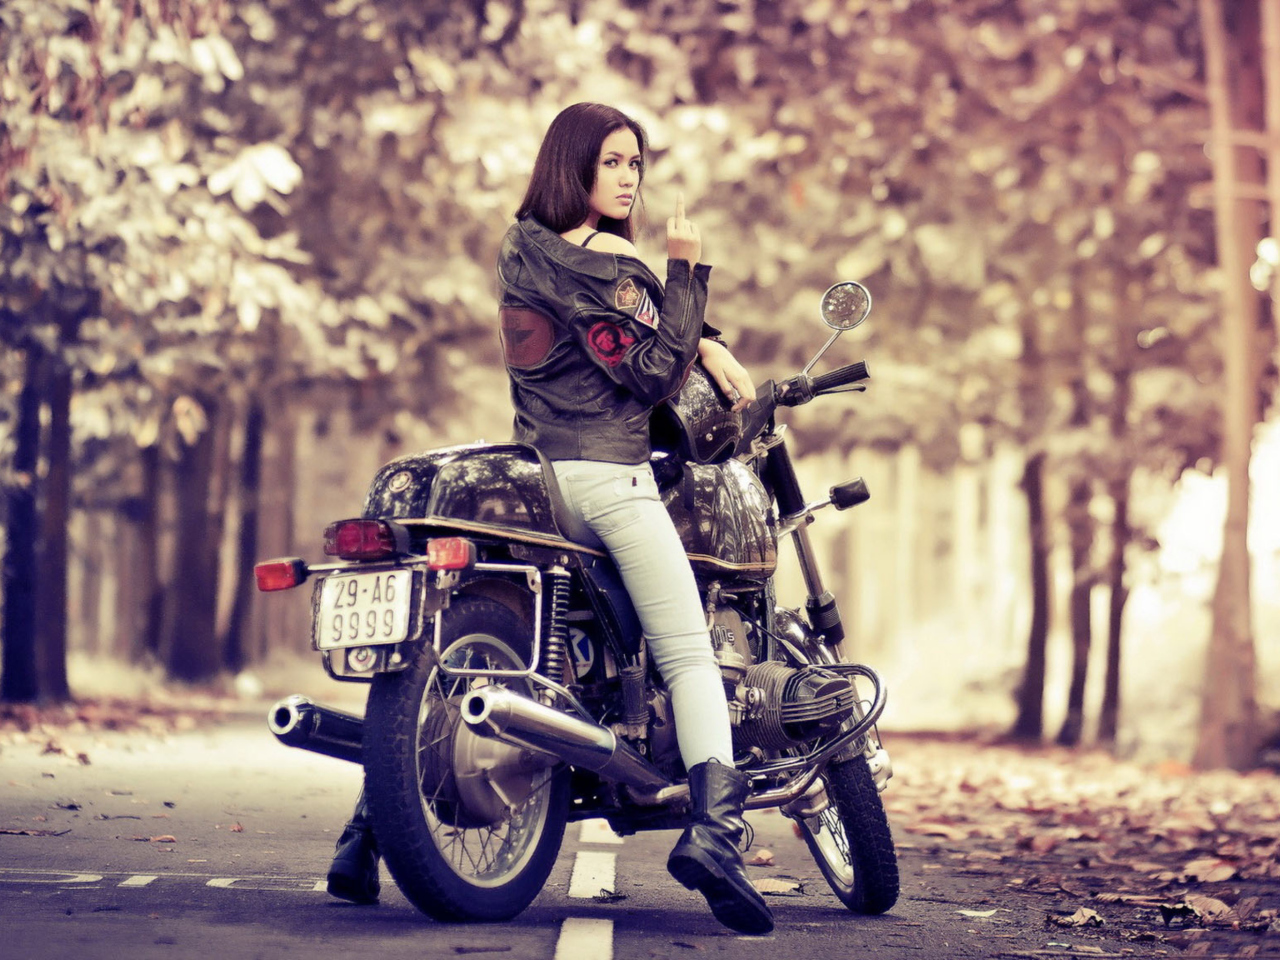 Moto Girl wallpaper 1280x960